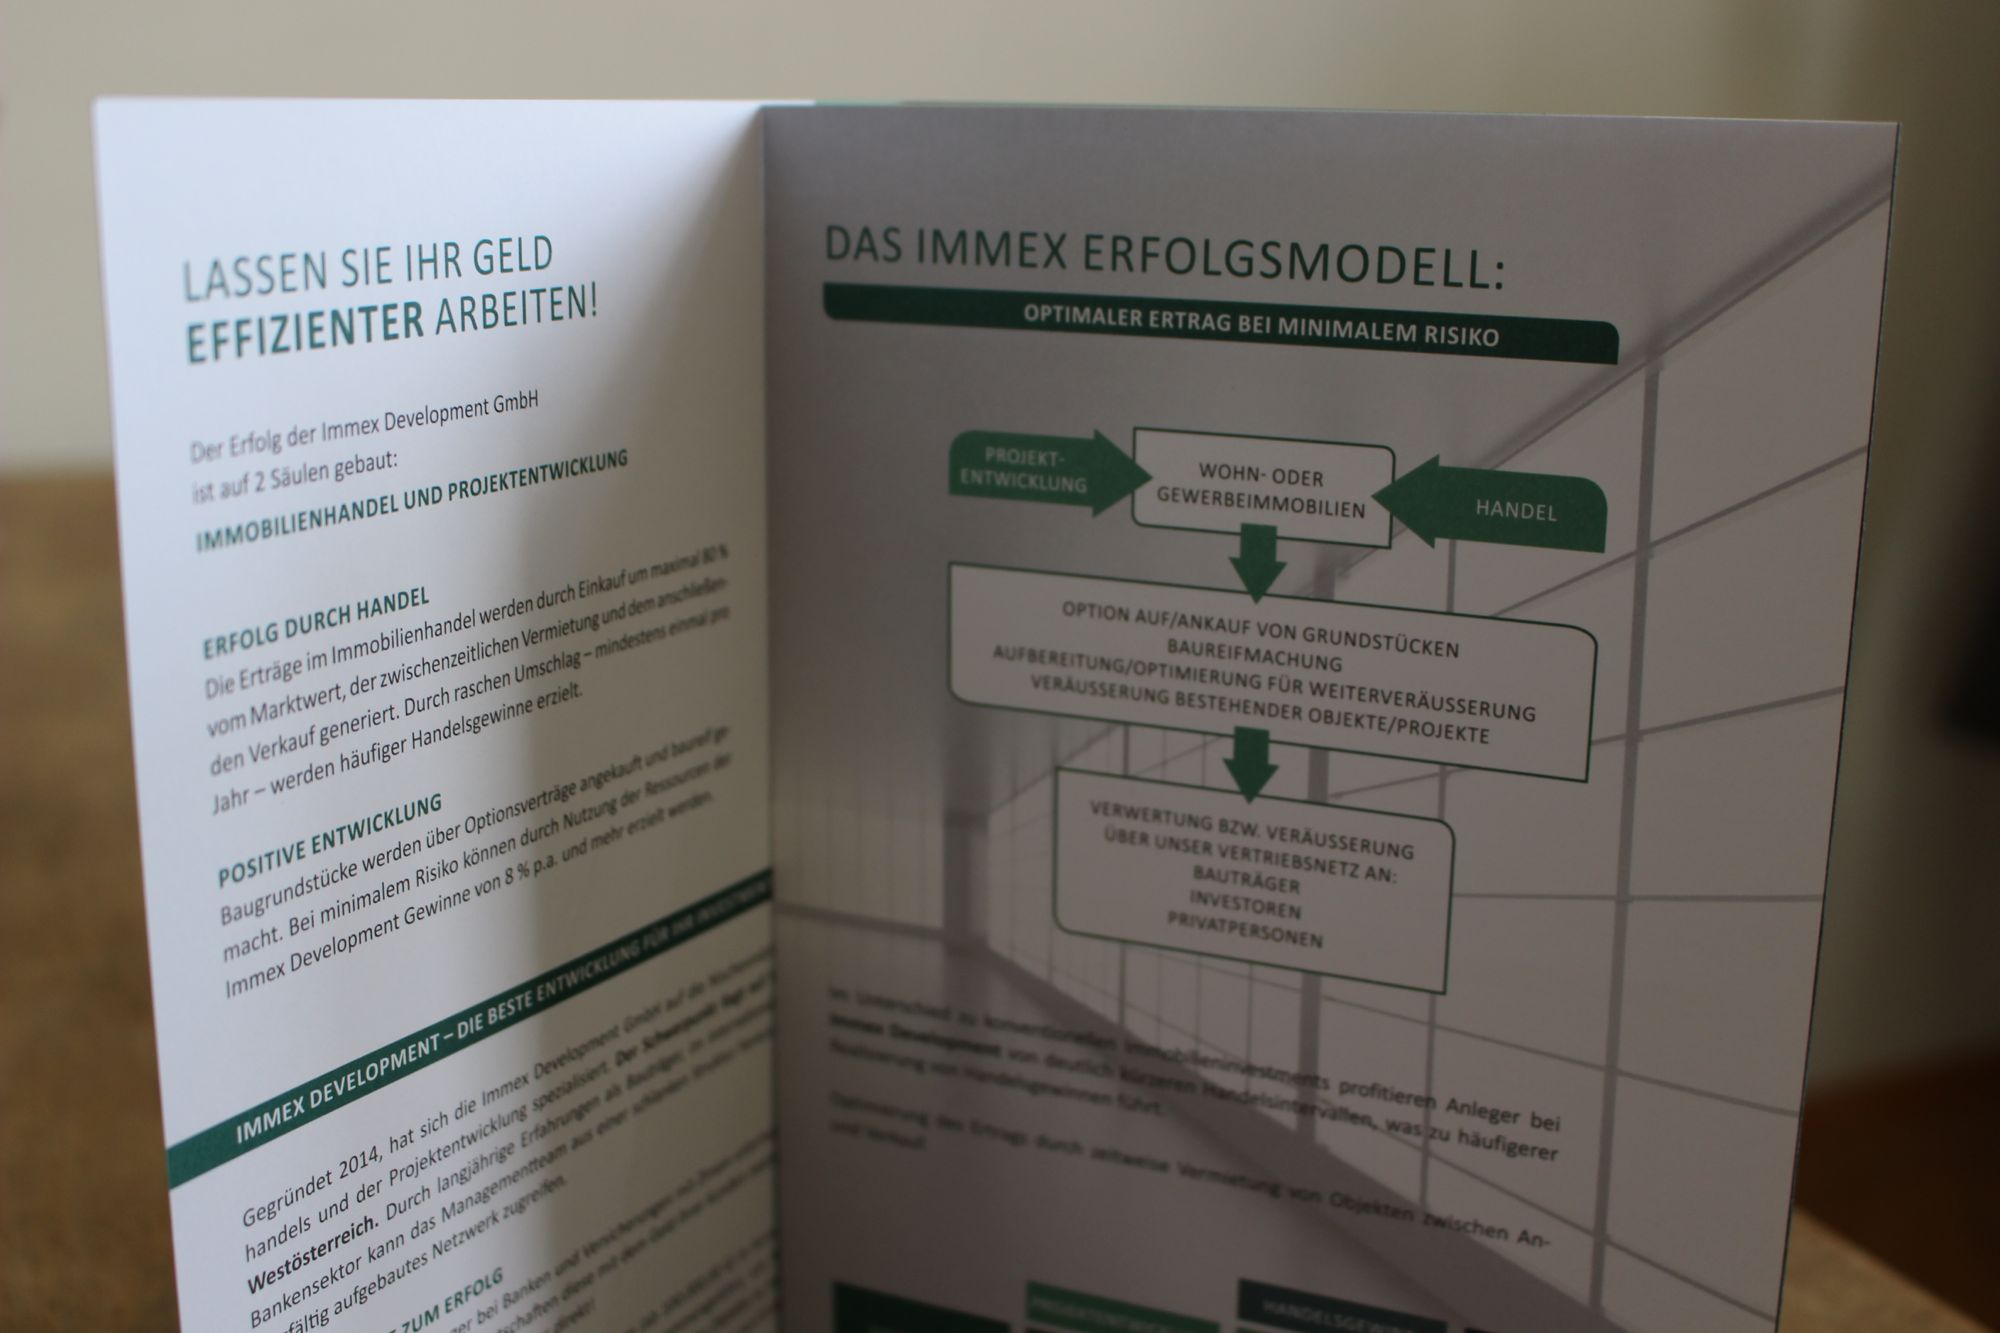 Folder für Immex Development GmbH